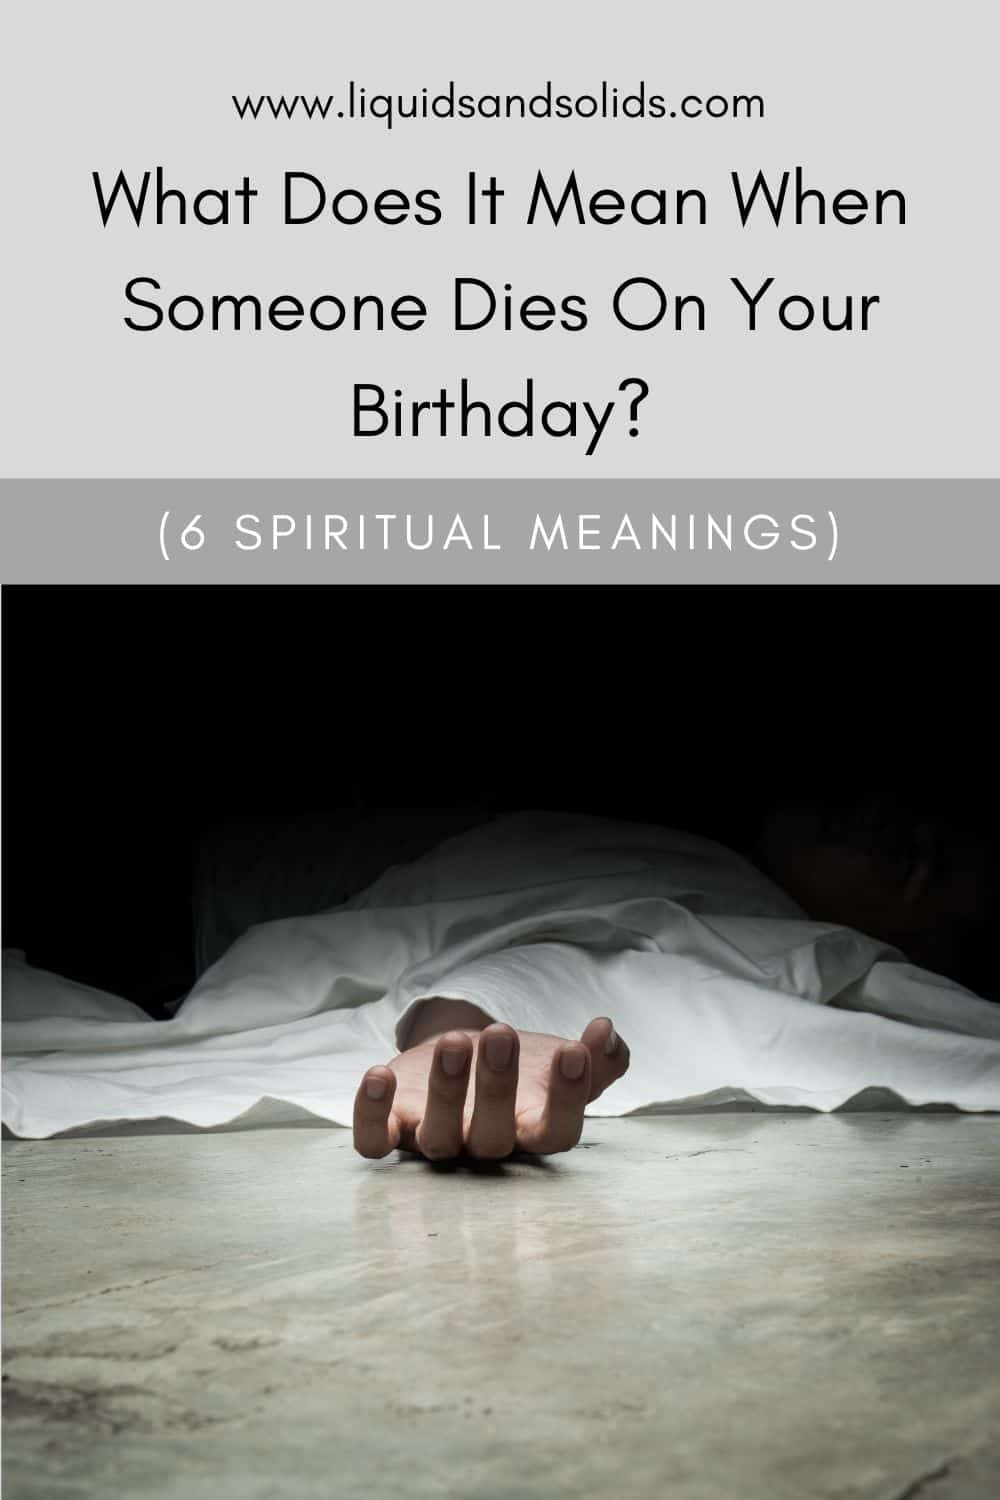  ماذا يعني وفاة شخص ما في عيد ميلادك؟ (6 معاني روحية)